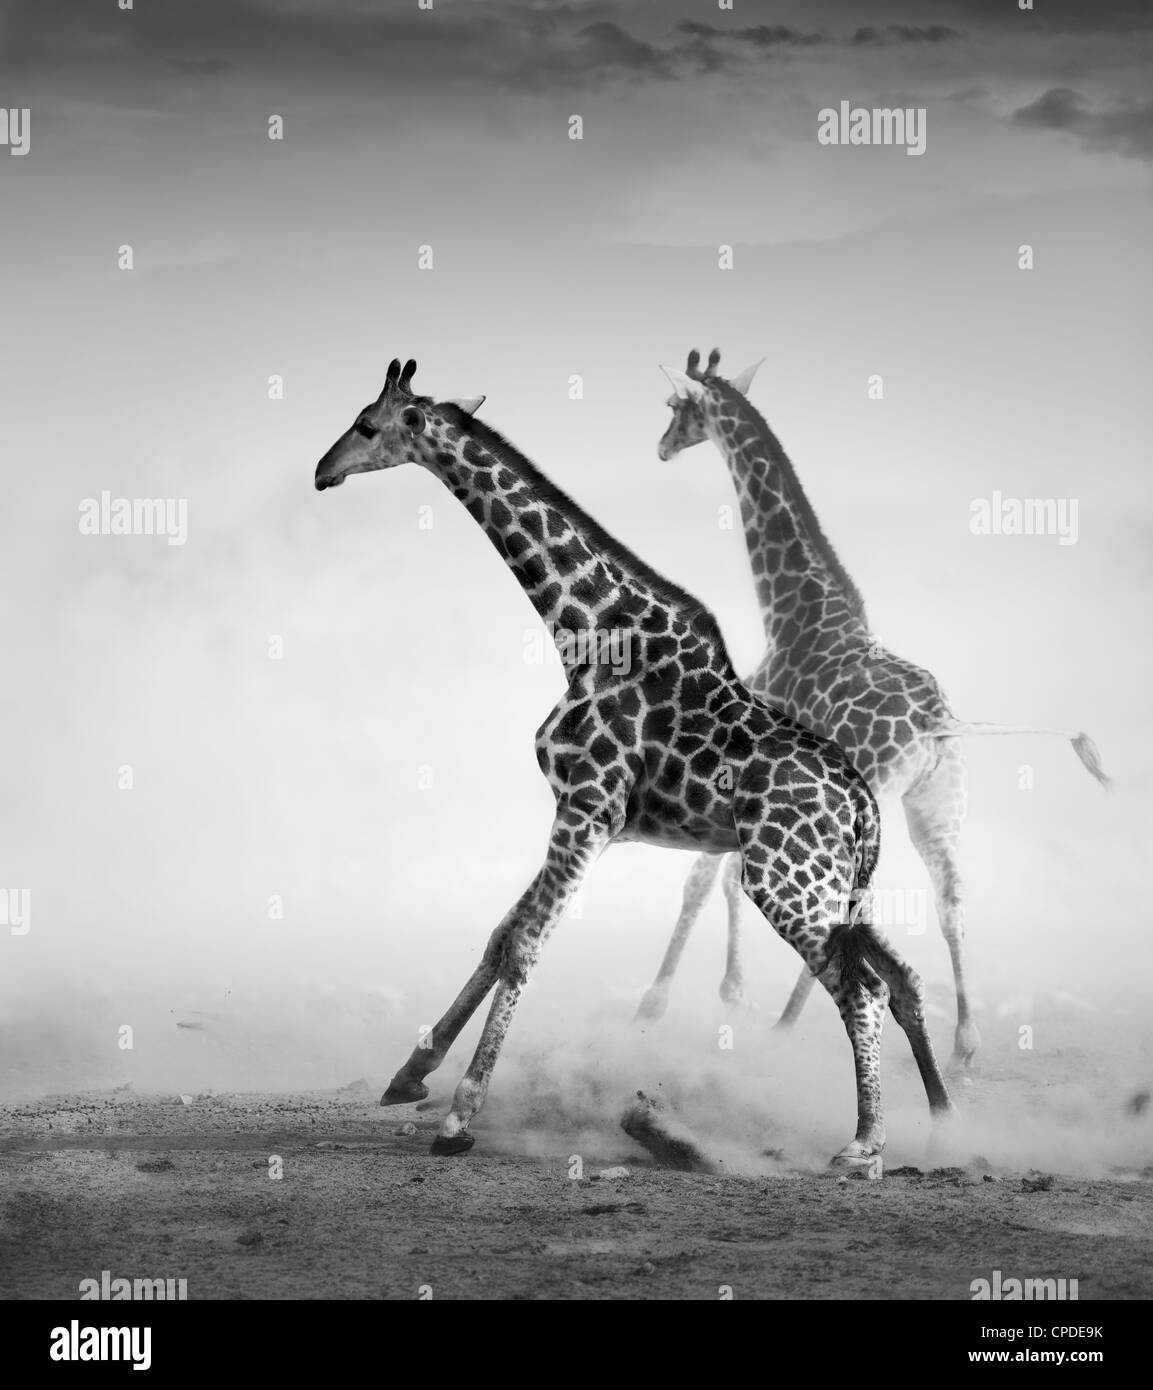 Giraffen auf der Flucht (künstlerische Verarbeitung) Stockfoto